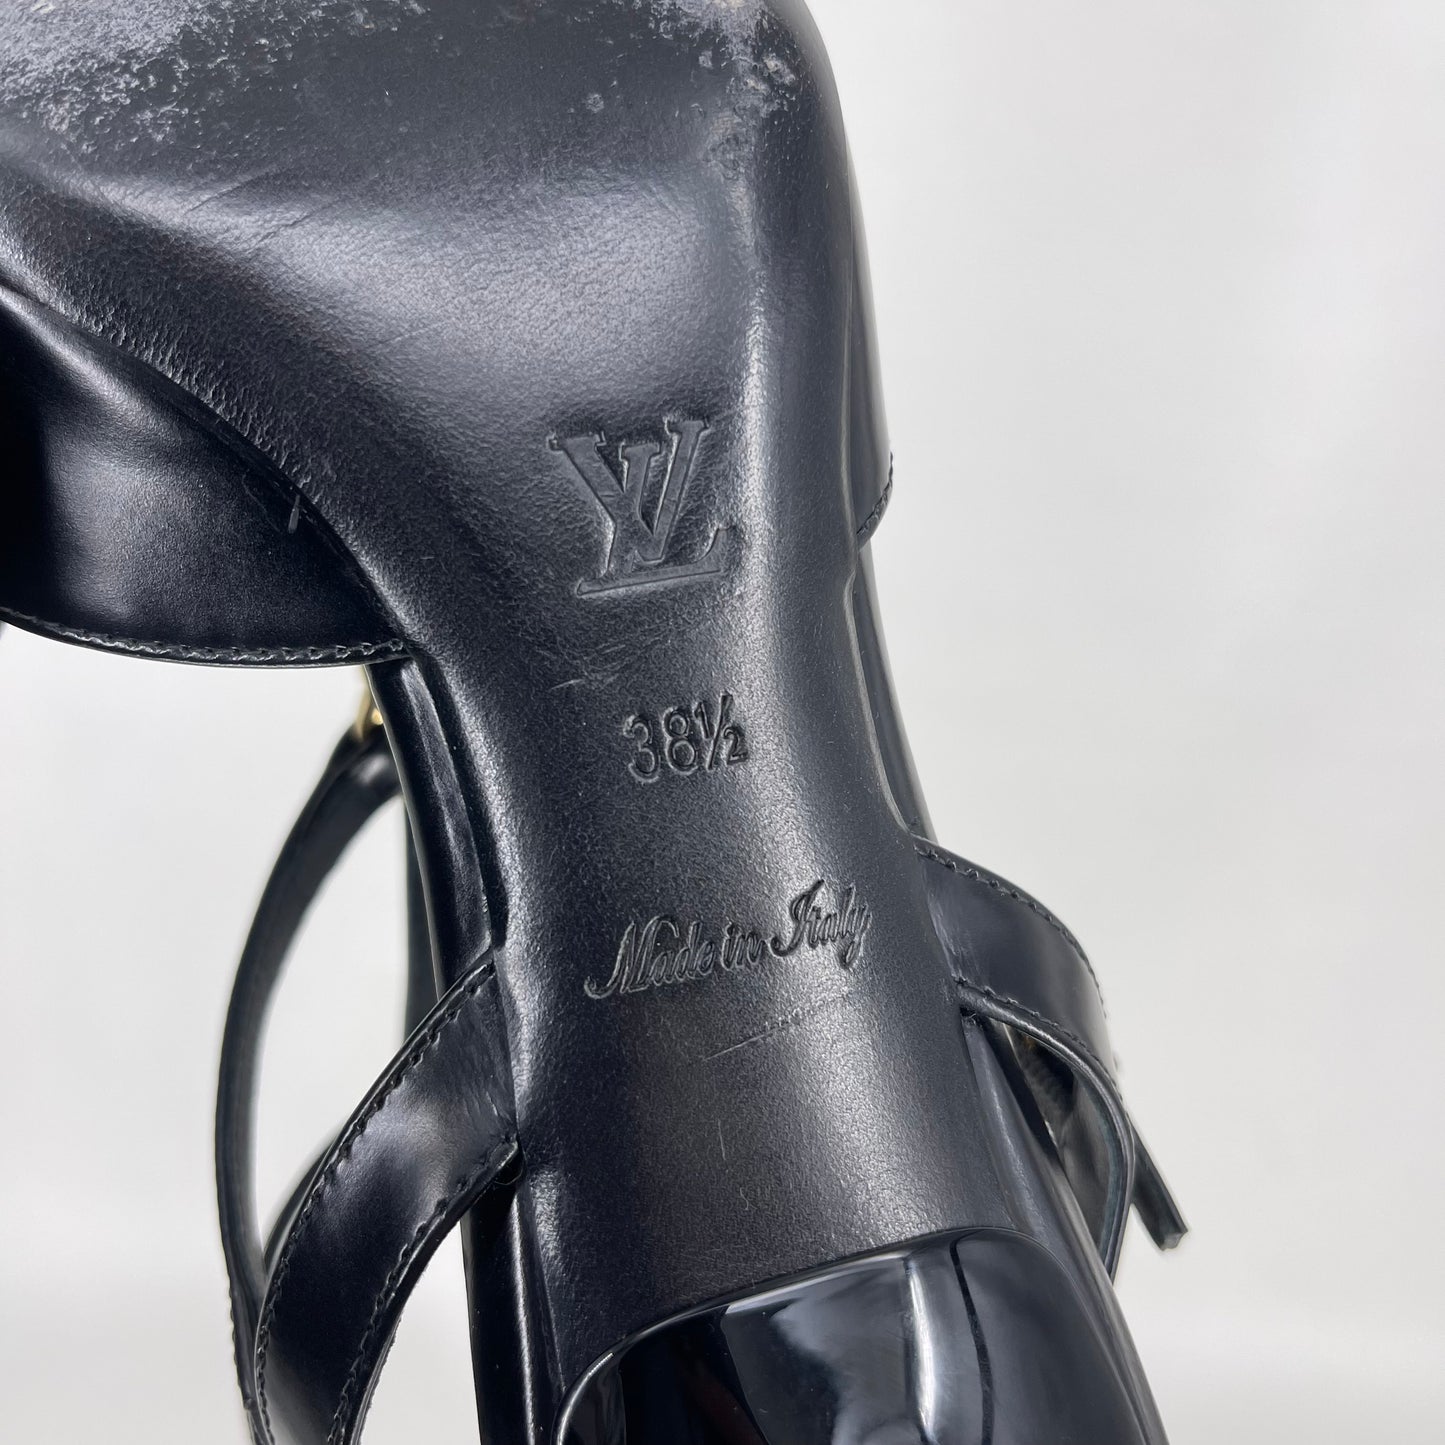 Authentic Louis Vuitton Black Leather Keyhole Kitten Heel Pumps Sz 38.5